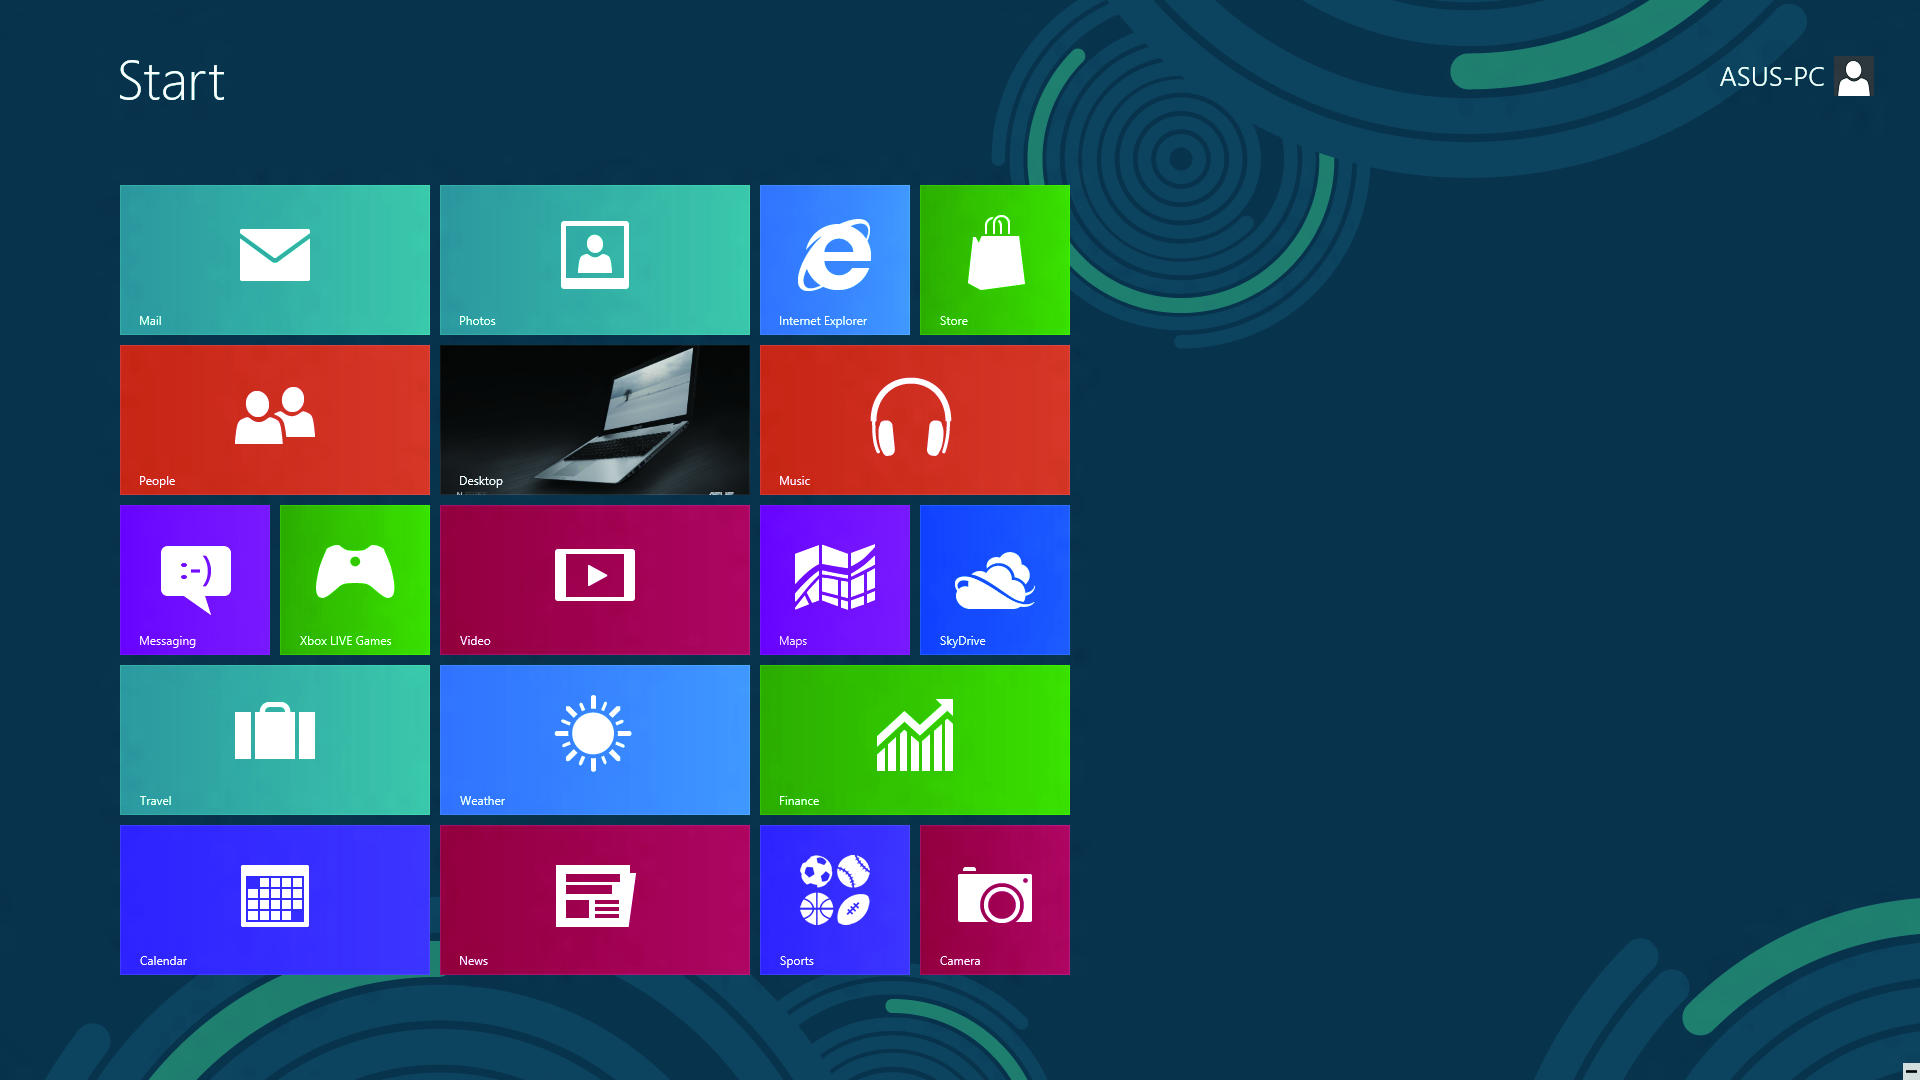 Windows UI Windows användargränssnitt (Ul/user interface) är den bildblocksbaserade visning som används i Windows 8.